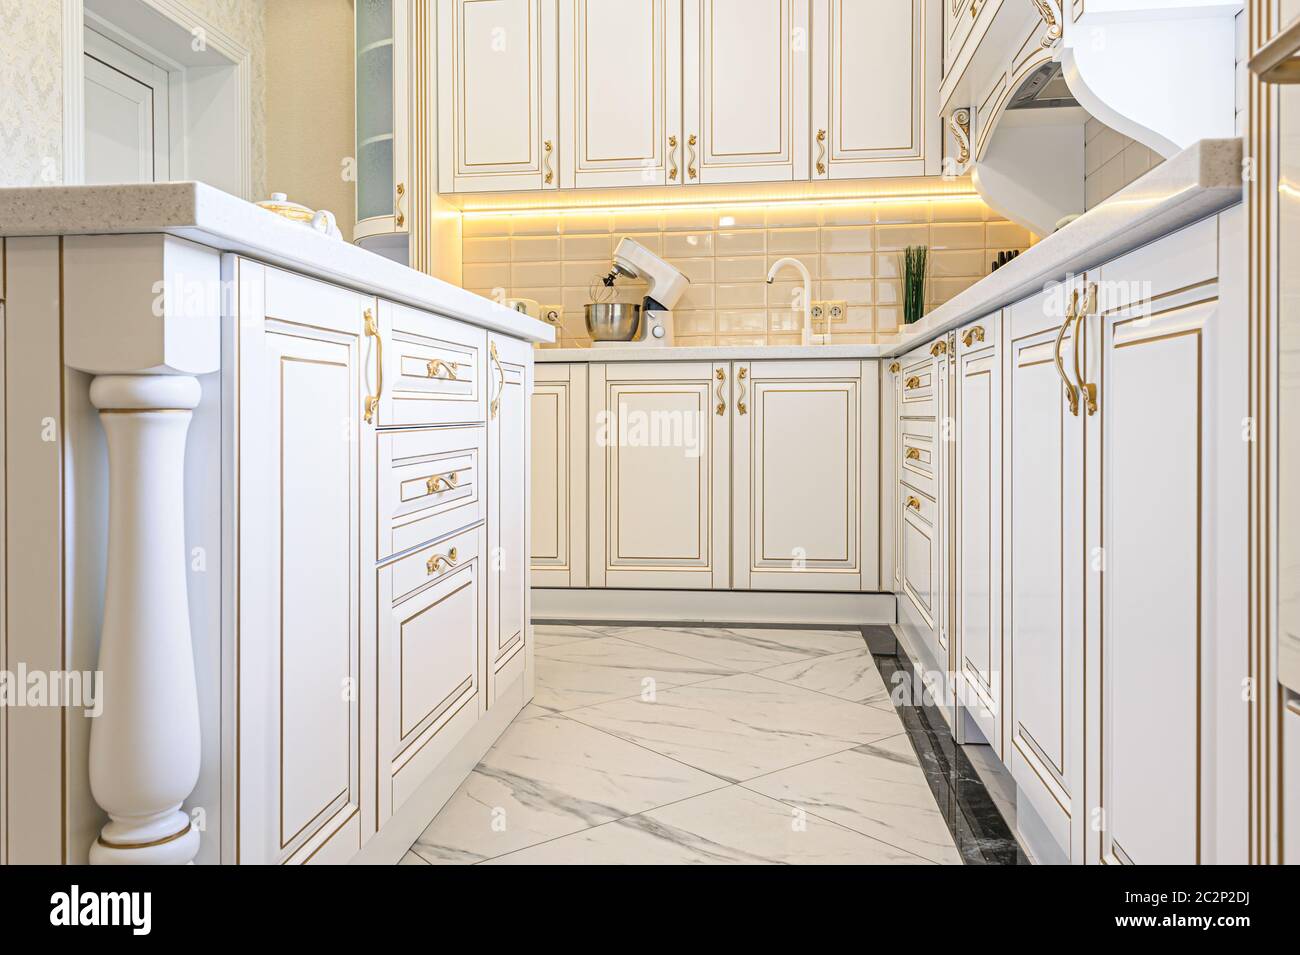 Stile neoclassico in cucina di lusso interno Foto Stock